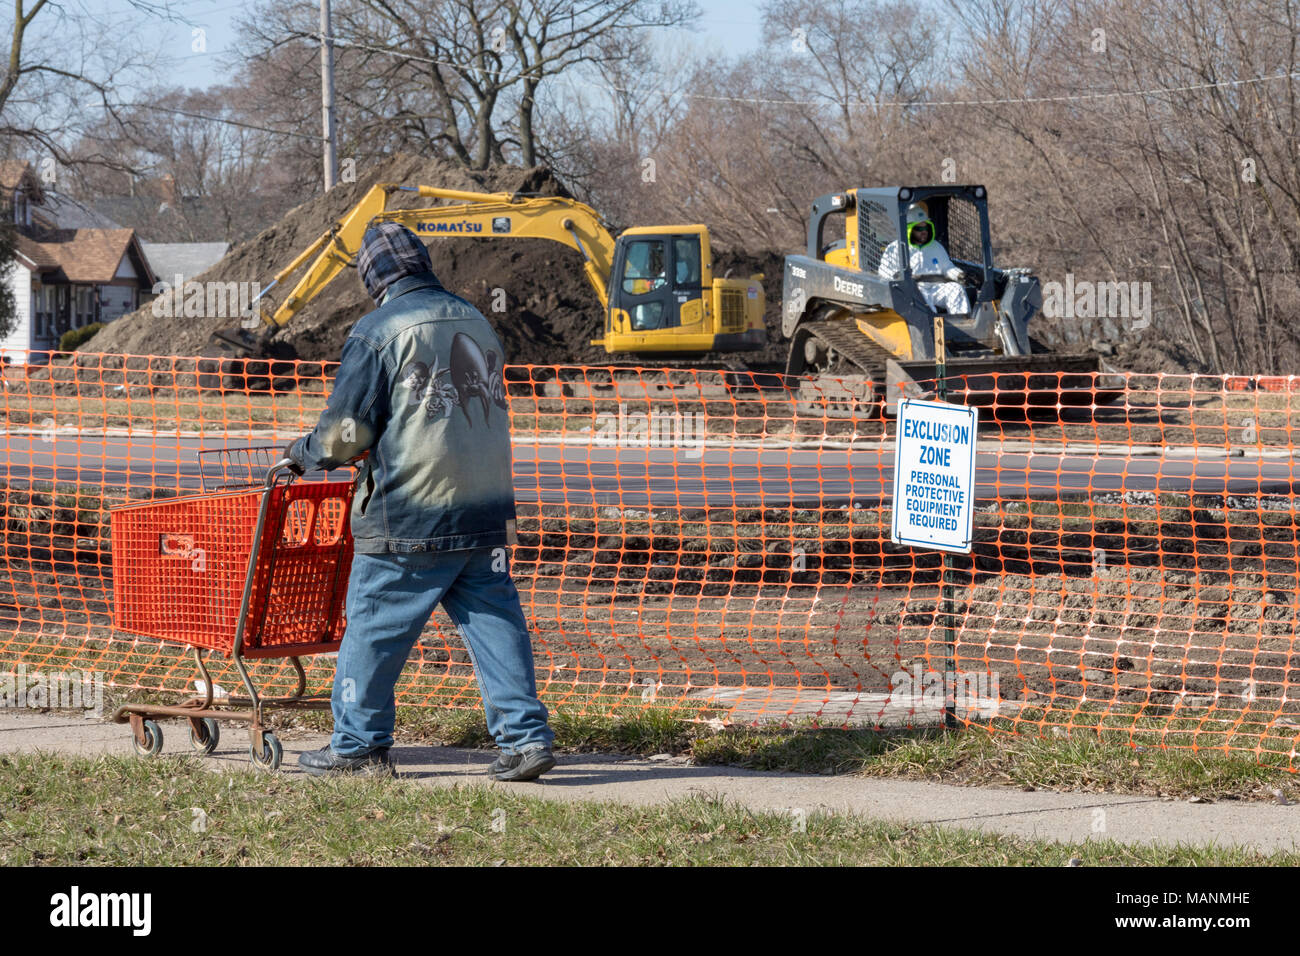 Detroit, Michigan - eine Nachbarschaft ansässigen treibt ein Warenkorb Wanderungen von Collins Park, wo die Behörde für Umweltschutz ist Leitung entfernen - Stockfoto